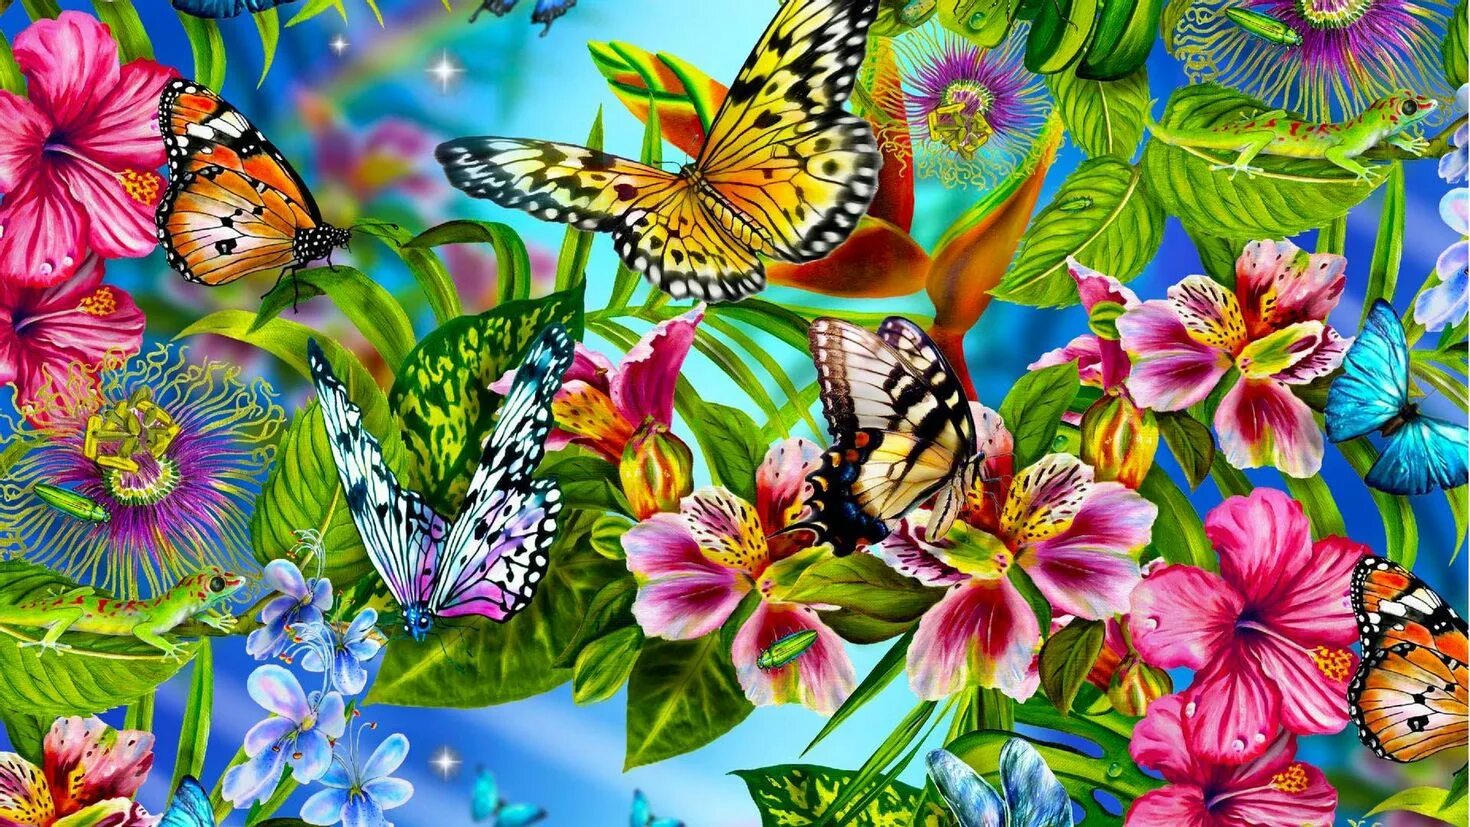 Бесплатные картинки на заставку телефона. Бабочка на цветке. Самые красивые цветы и бабочки. Цветы и бабочки картинки. Лето цветы бабочки.